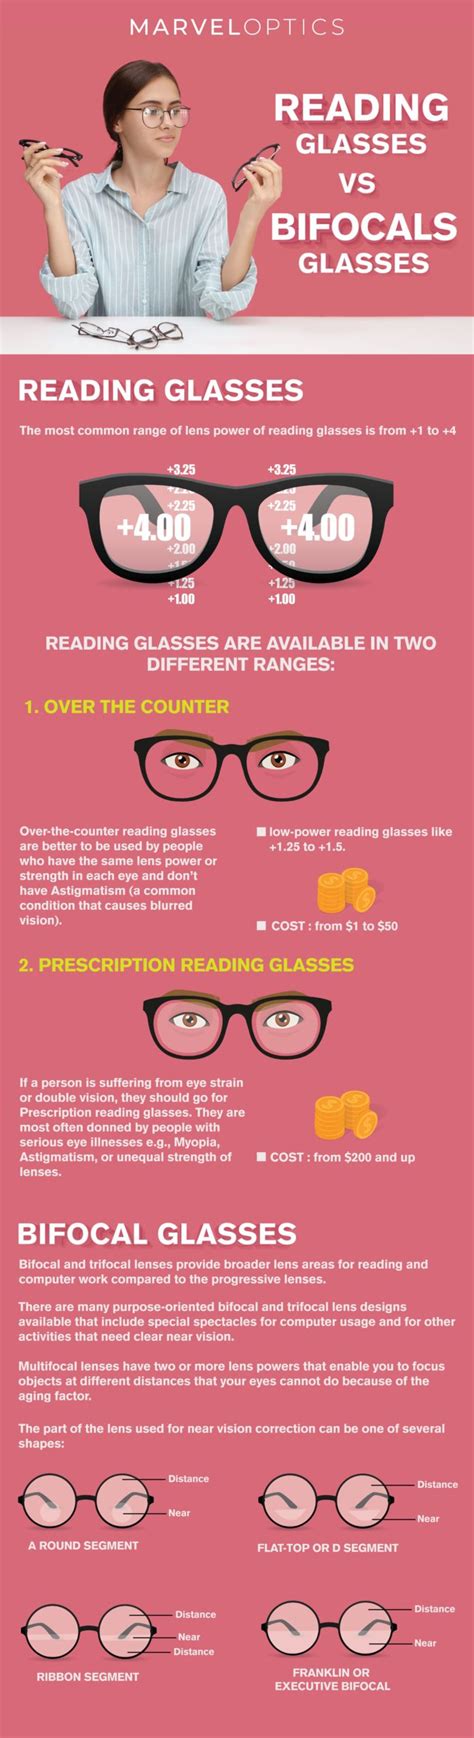 reading glasses vs bifocals glasses marvel optics